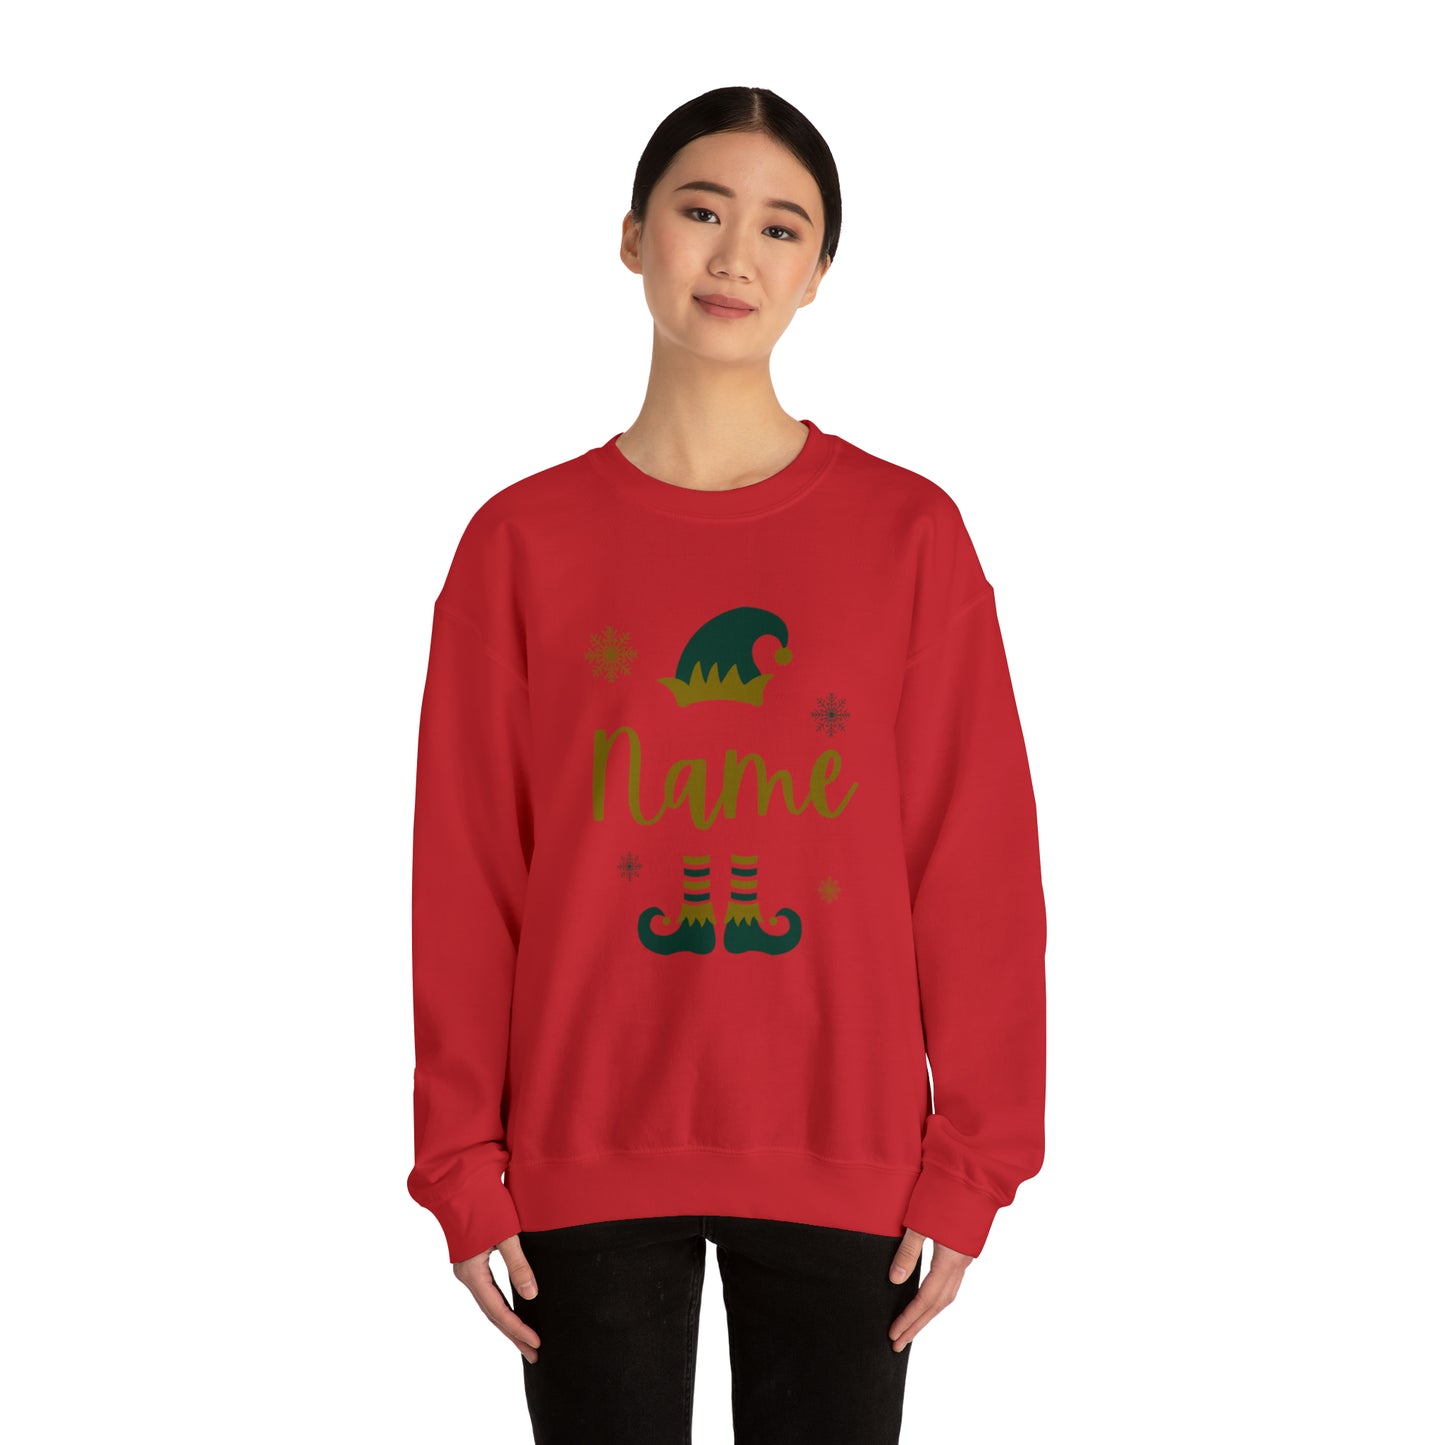 Personalized Name Elf Merry Christmas Crewneck Sweatshirt